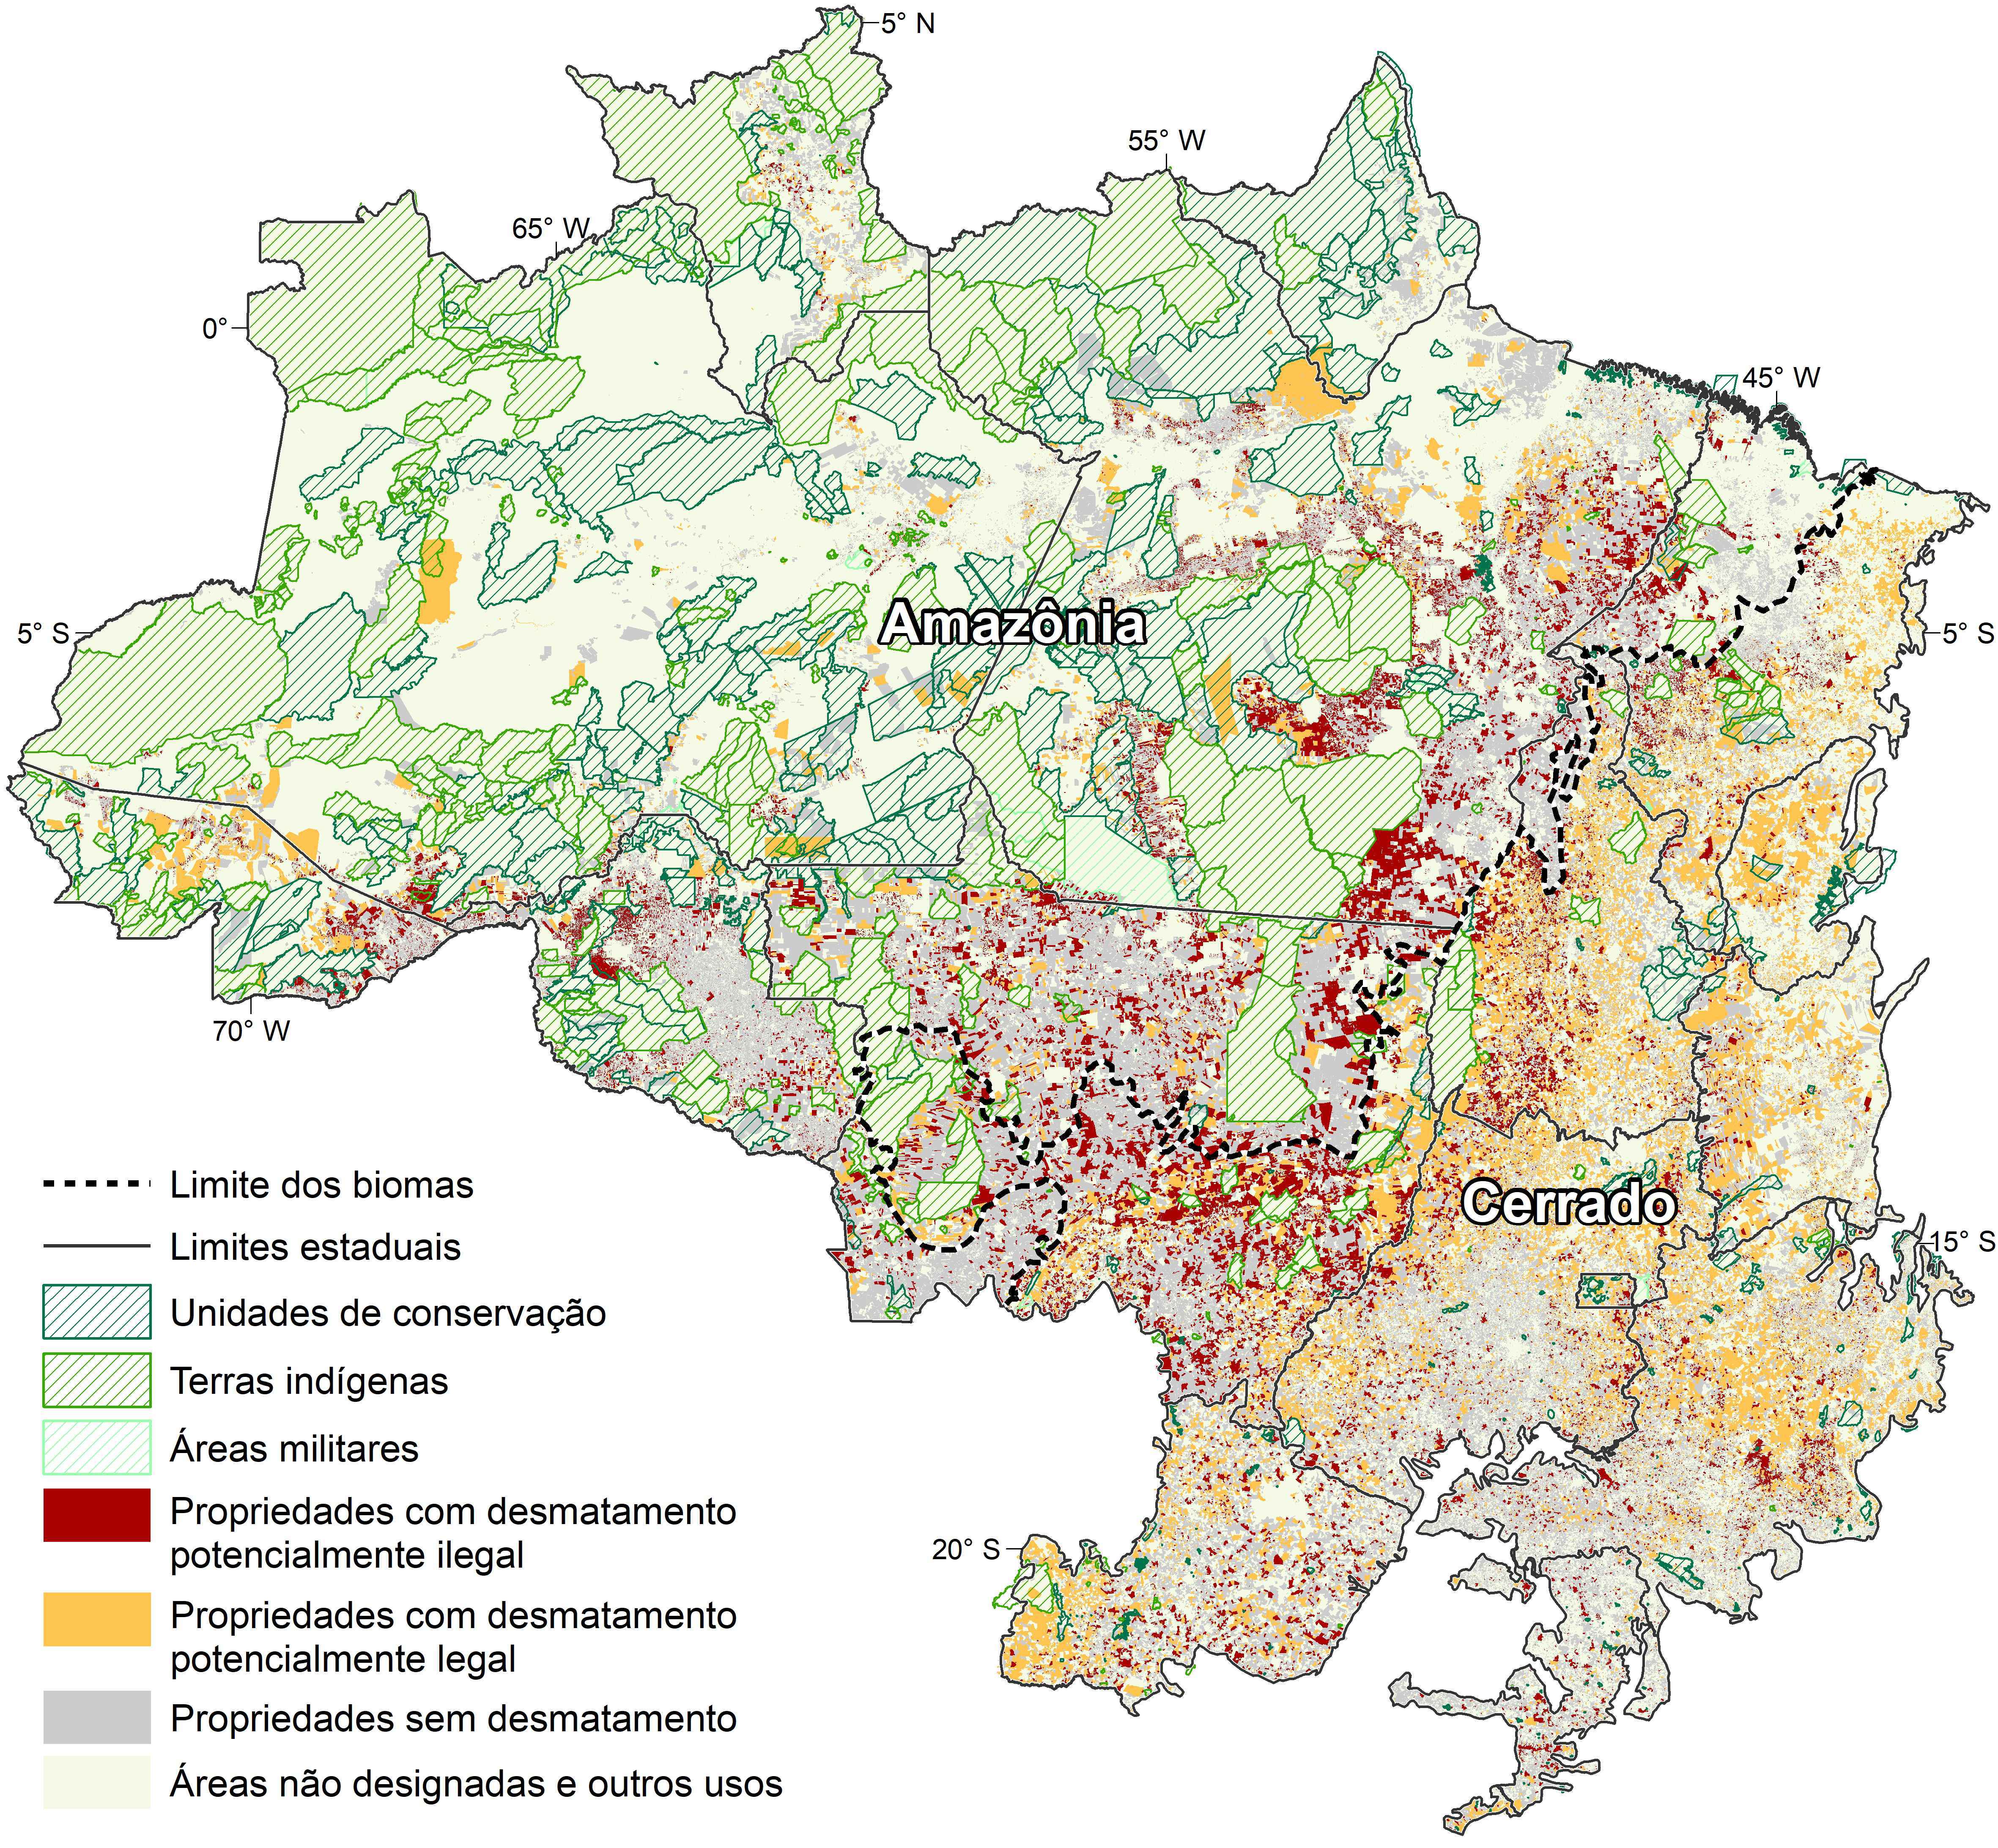 Representação das propriedades e situação do desmatamento